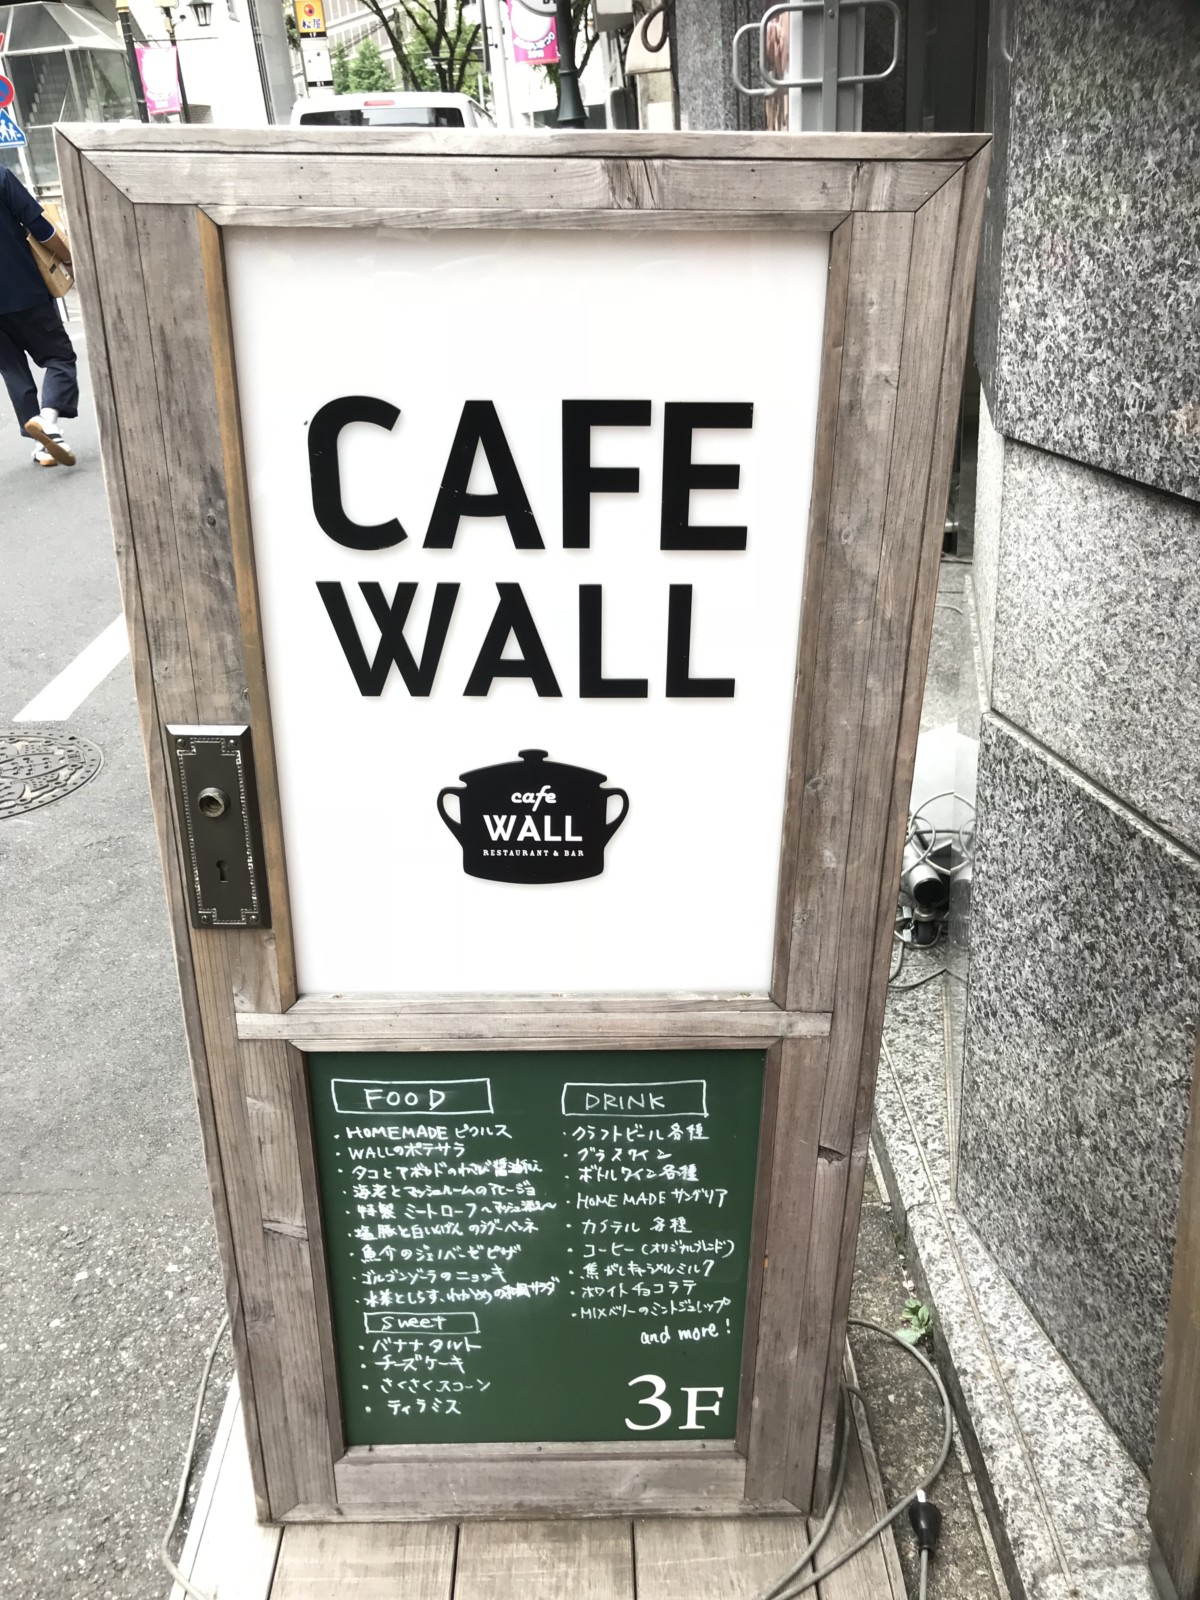 新宿三丁目には隠れ家的なカフェがいっぱい 穴場カフェ10選をおすすめ Litora リトラ